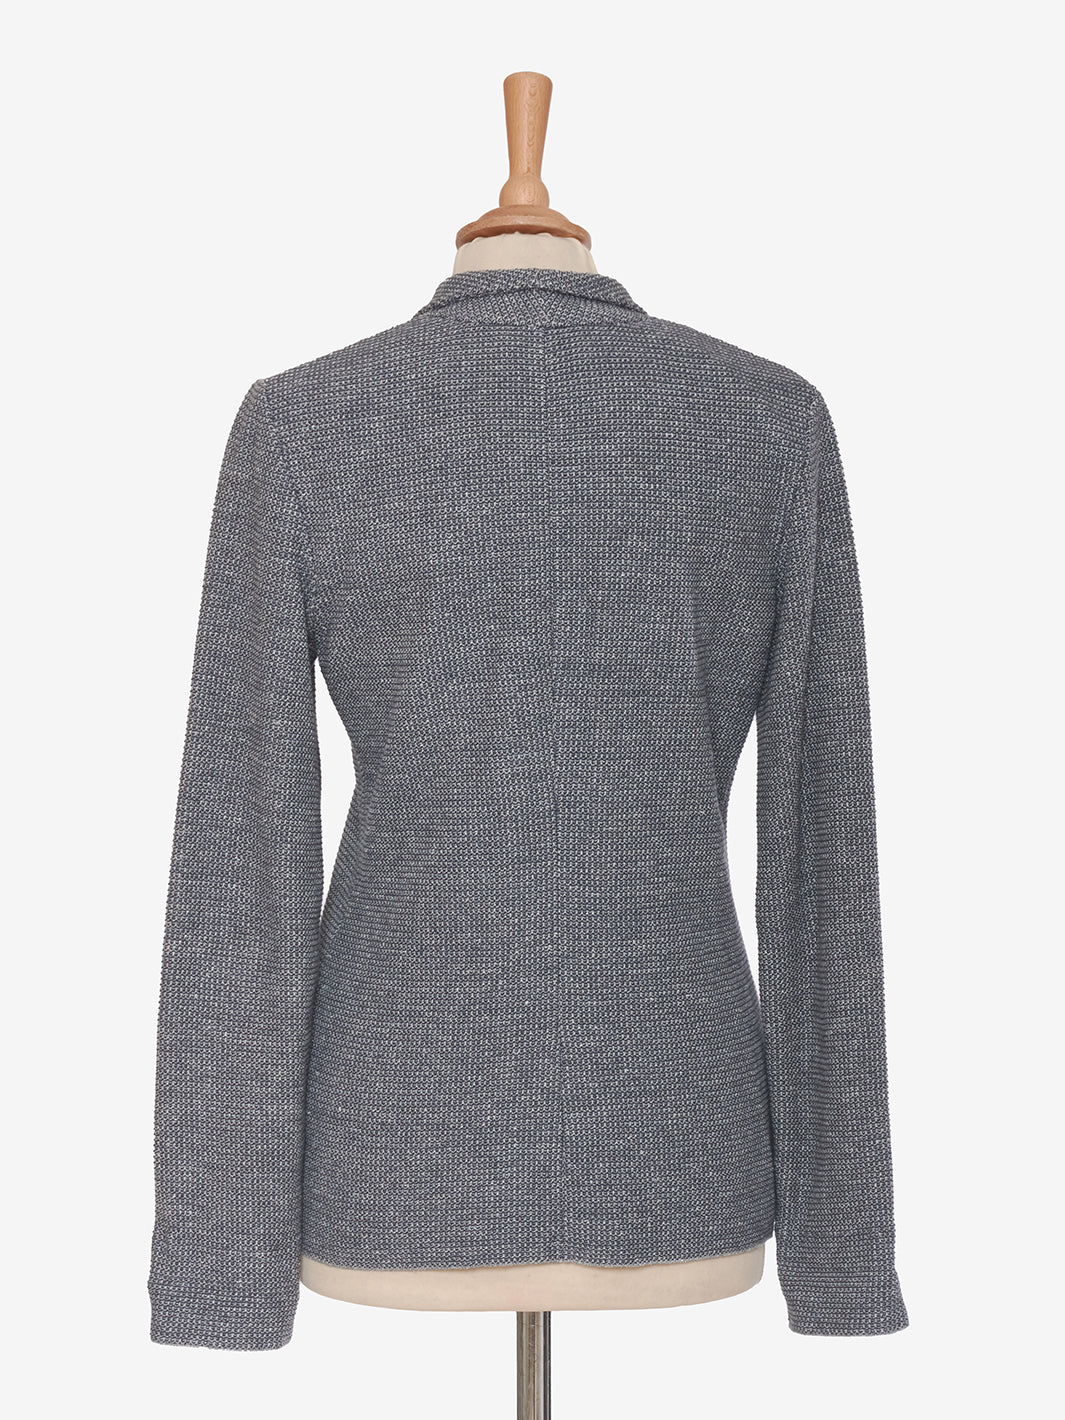 Falconeri gray knit jacket